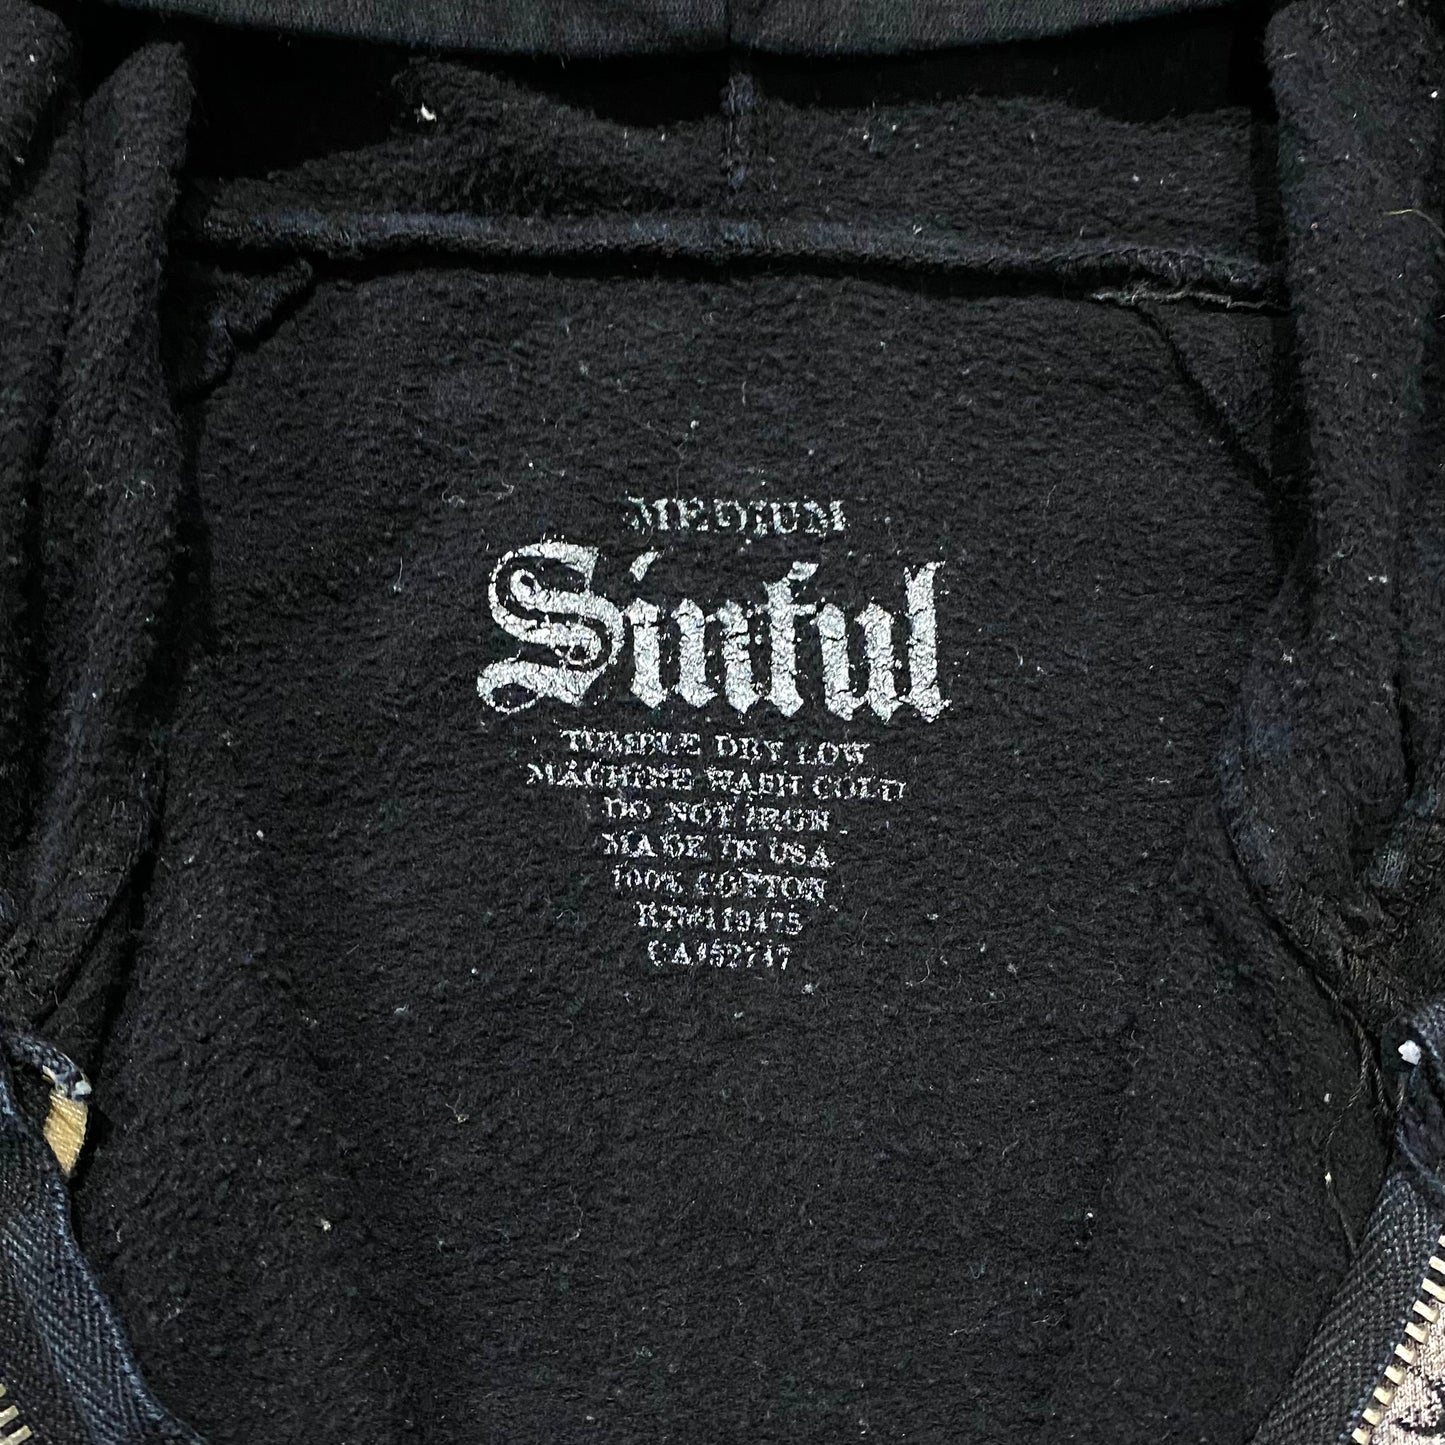 Angel design hull zip hoodie